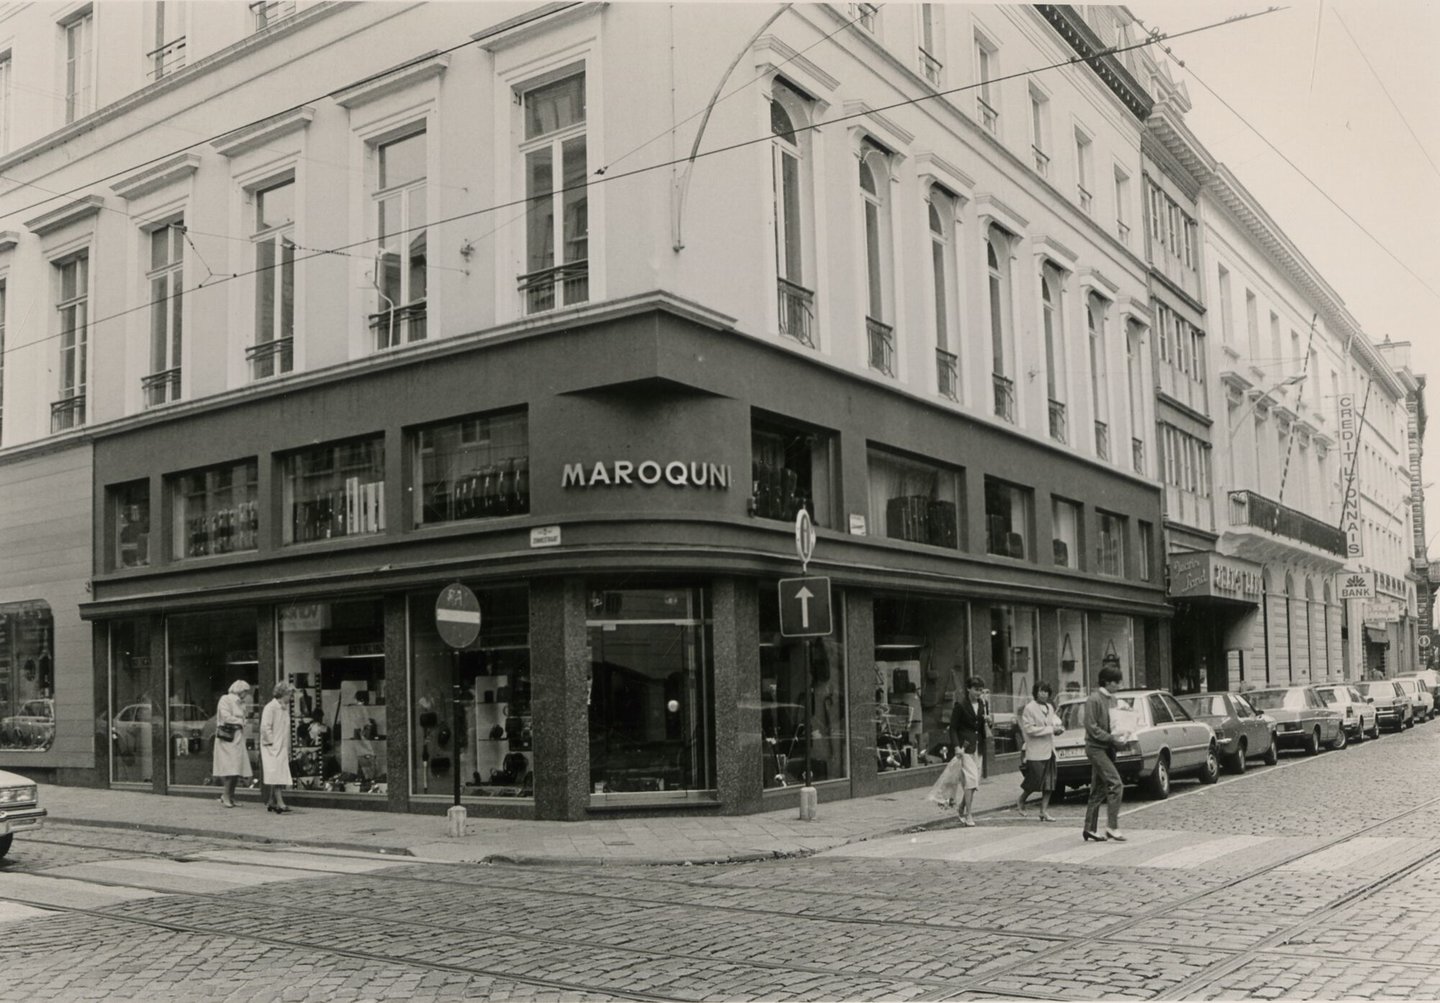 Etalage van Maroquni, een winkel van lederwaren, handtassen en accessoires in Gent